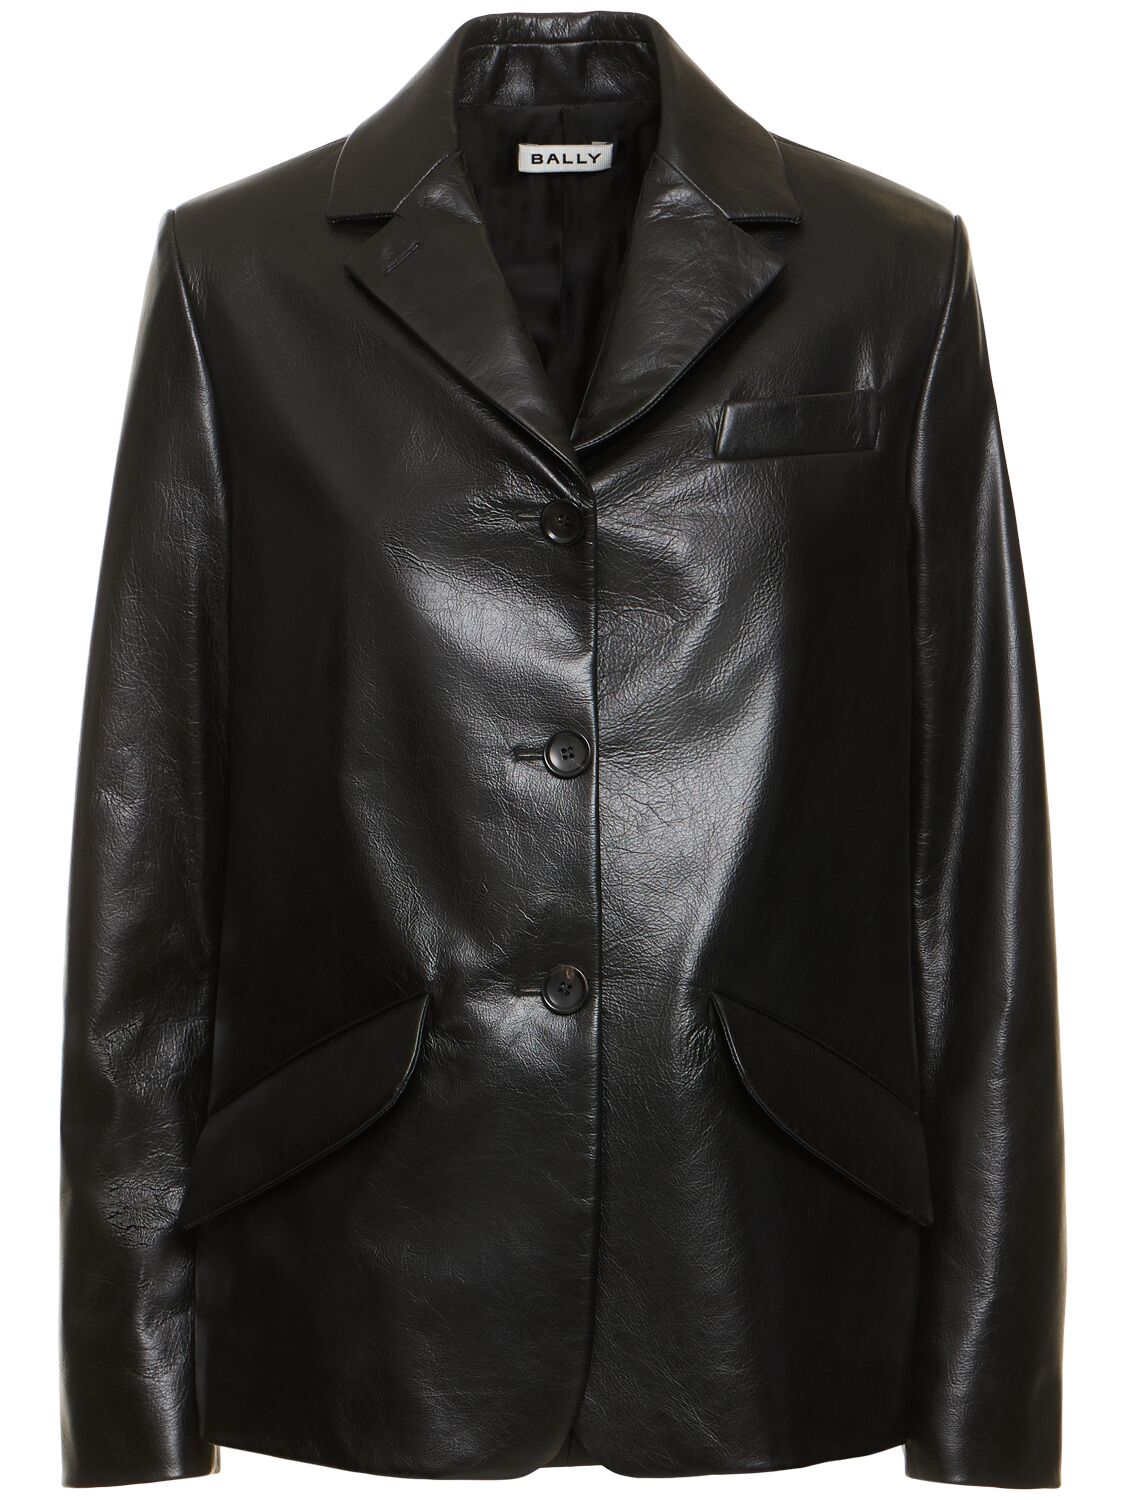 Image of Leather Blazer Jacket